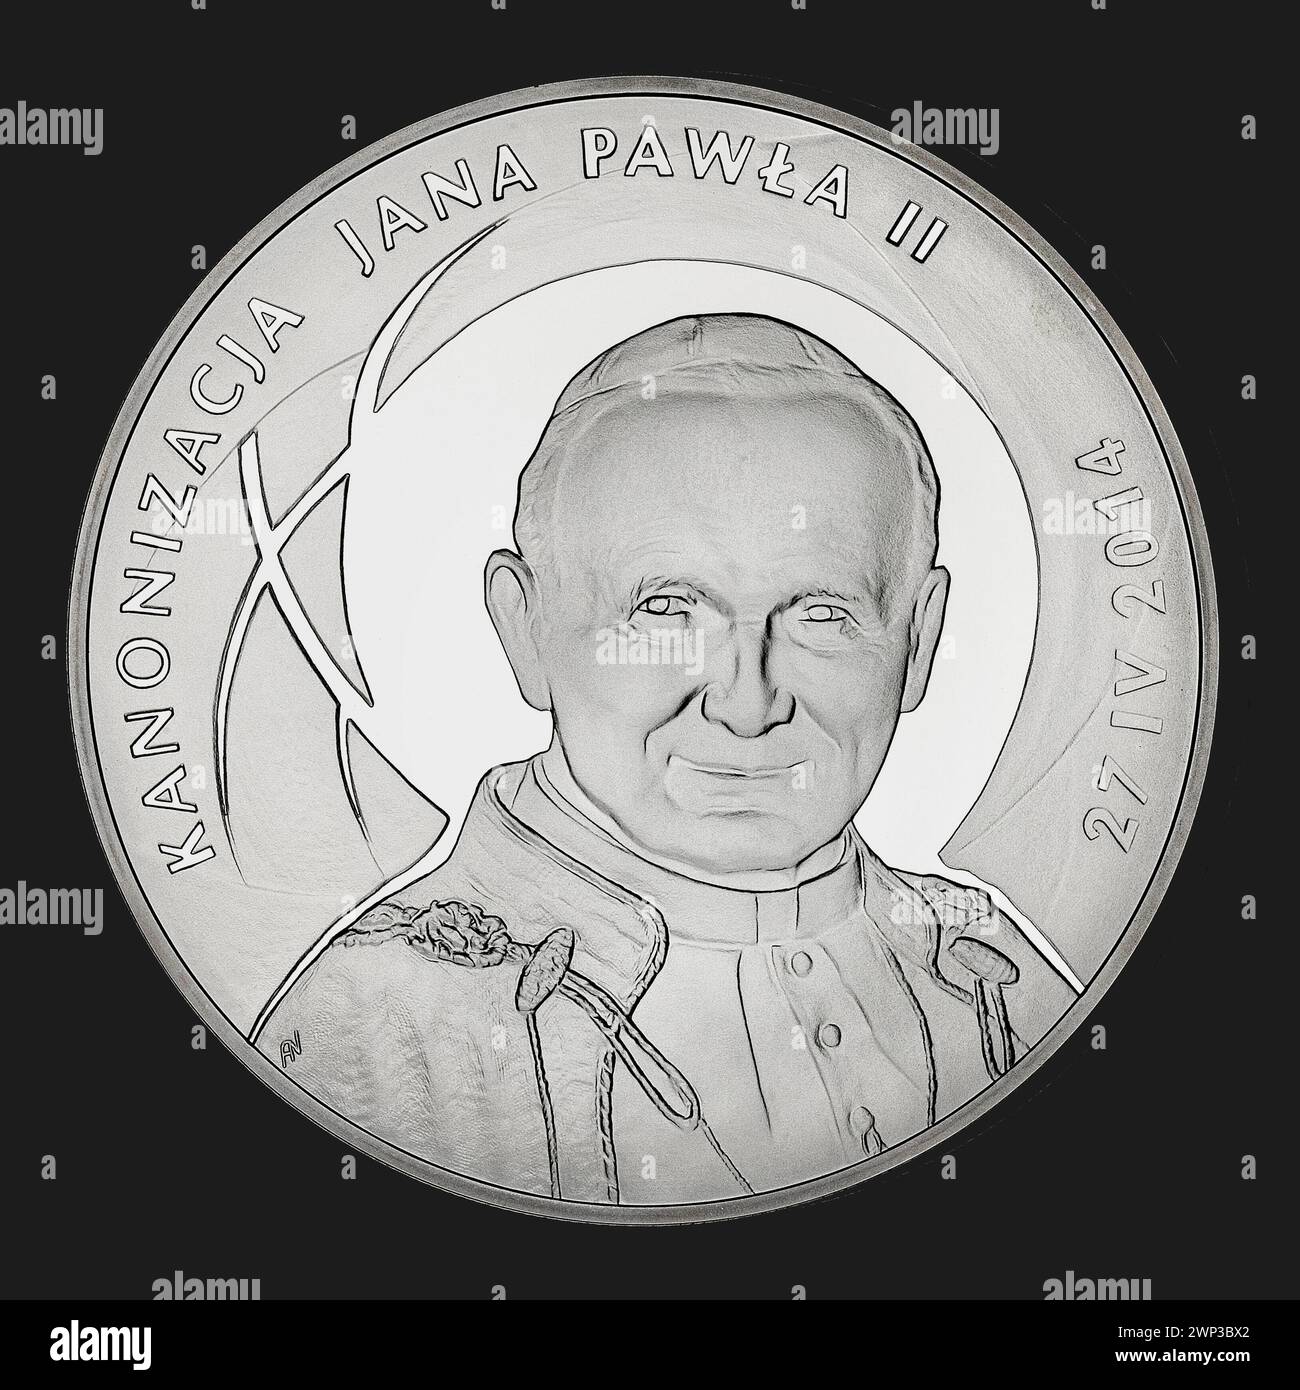 500 zlotys; Nowakowski, Andrzej (FL. CA 2001); 2014 (2013-00-00-2013-00-00); Giovanni Paolo II (Papa - 1920-2005), canonizzazione, monete da collezione, messaggio (provenienza) Foto Stock